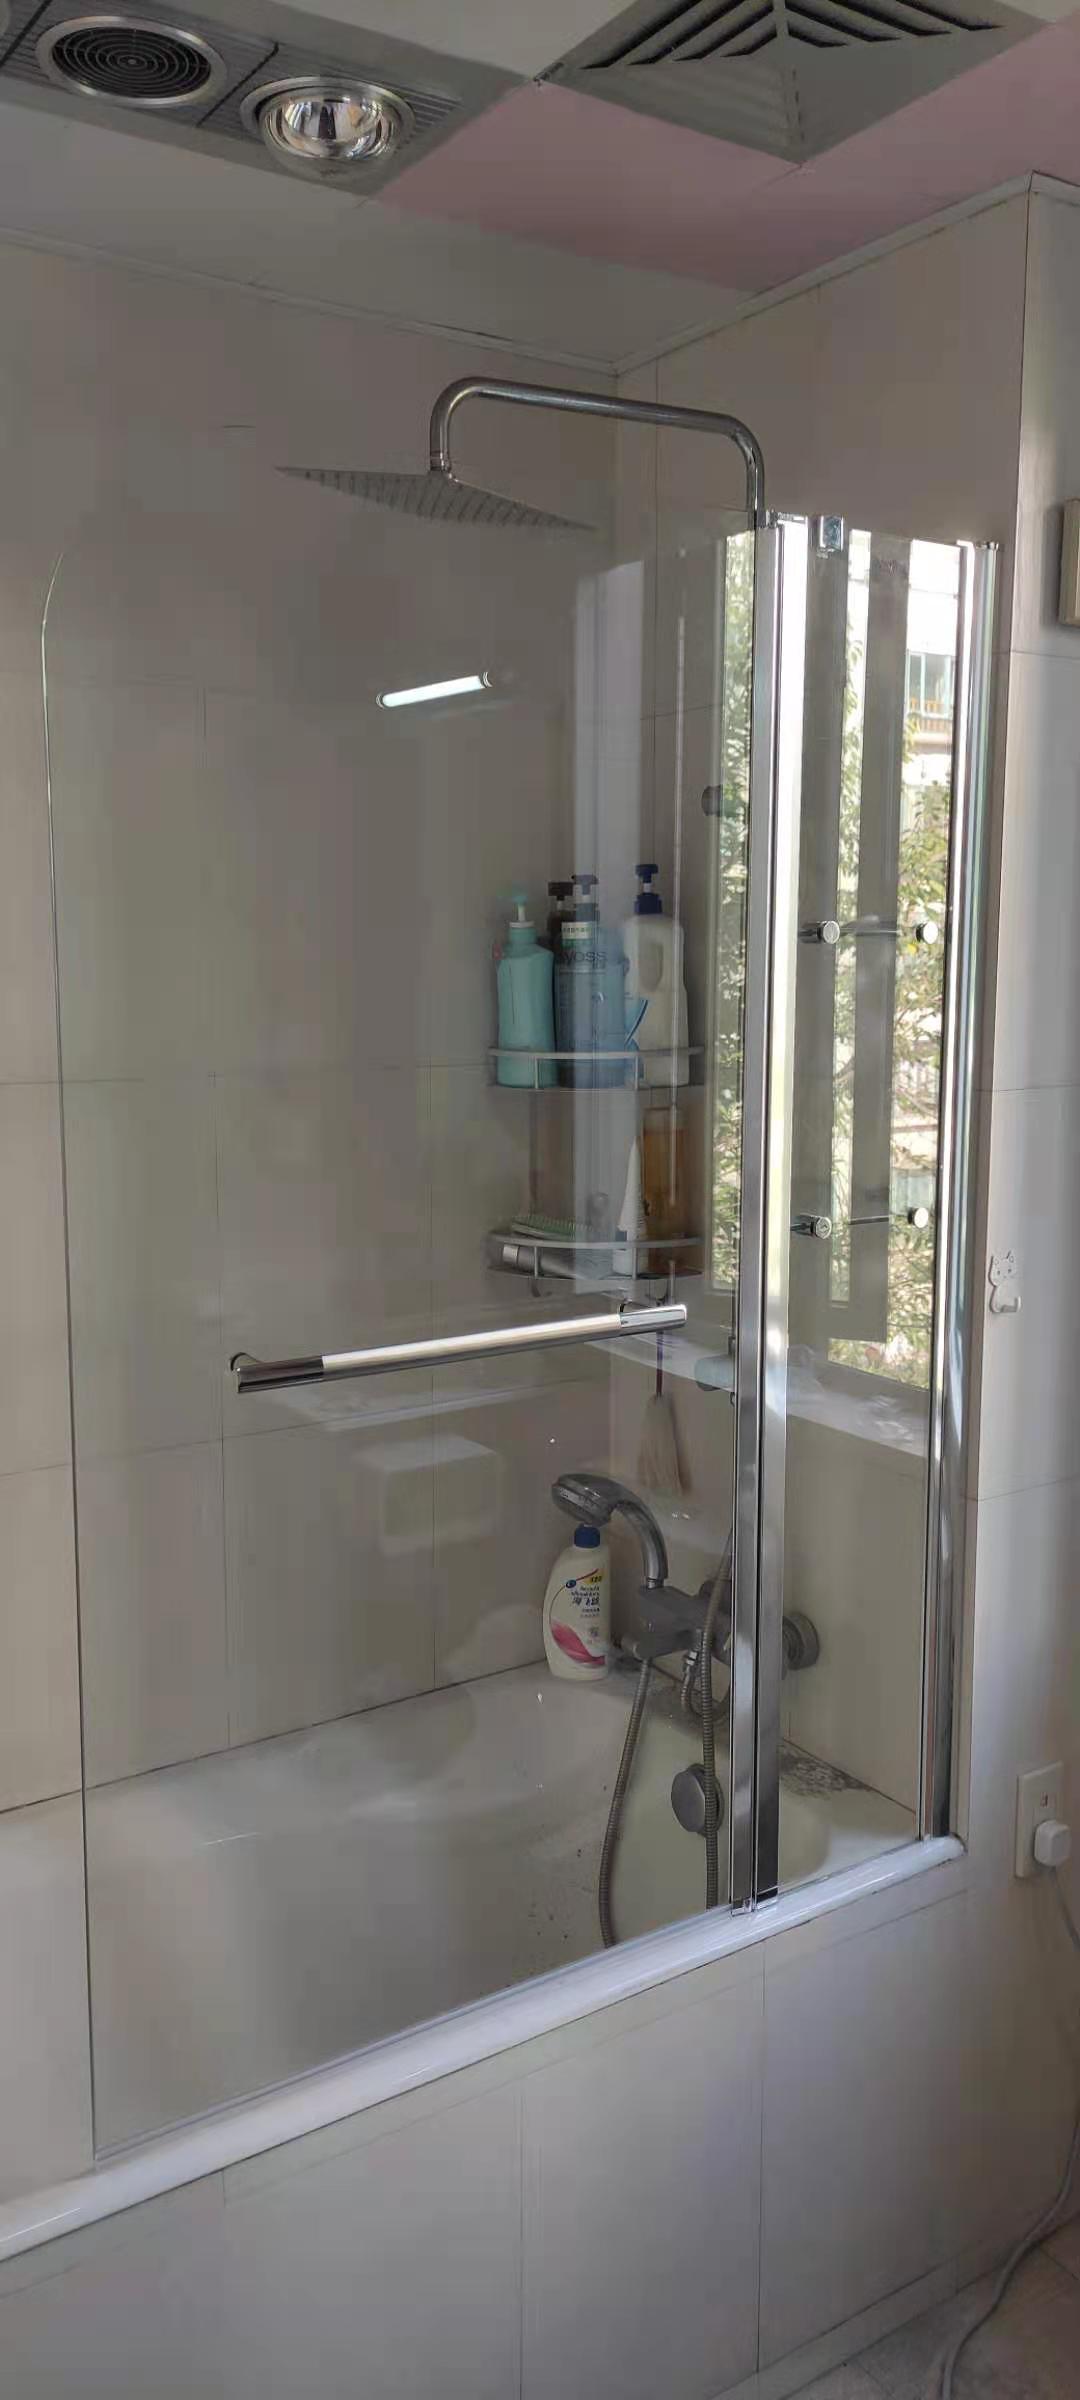 宁波两扇折叠收纳置物架浴缸挡水屏风钢化玻璃隔断淋浴屏风